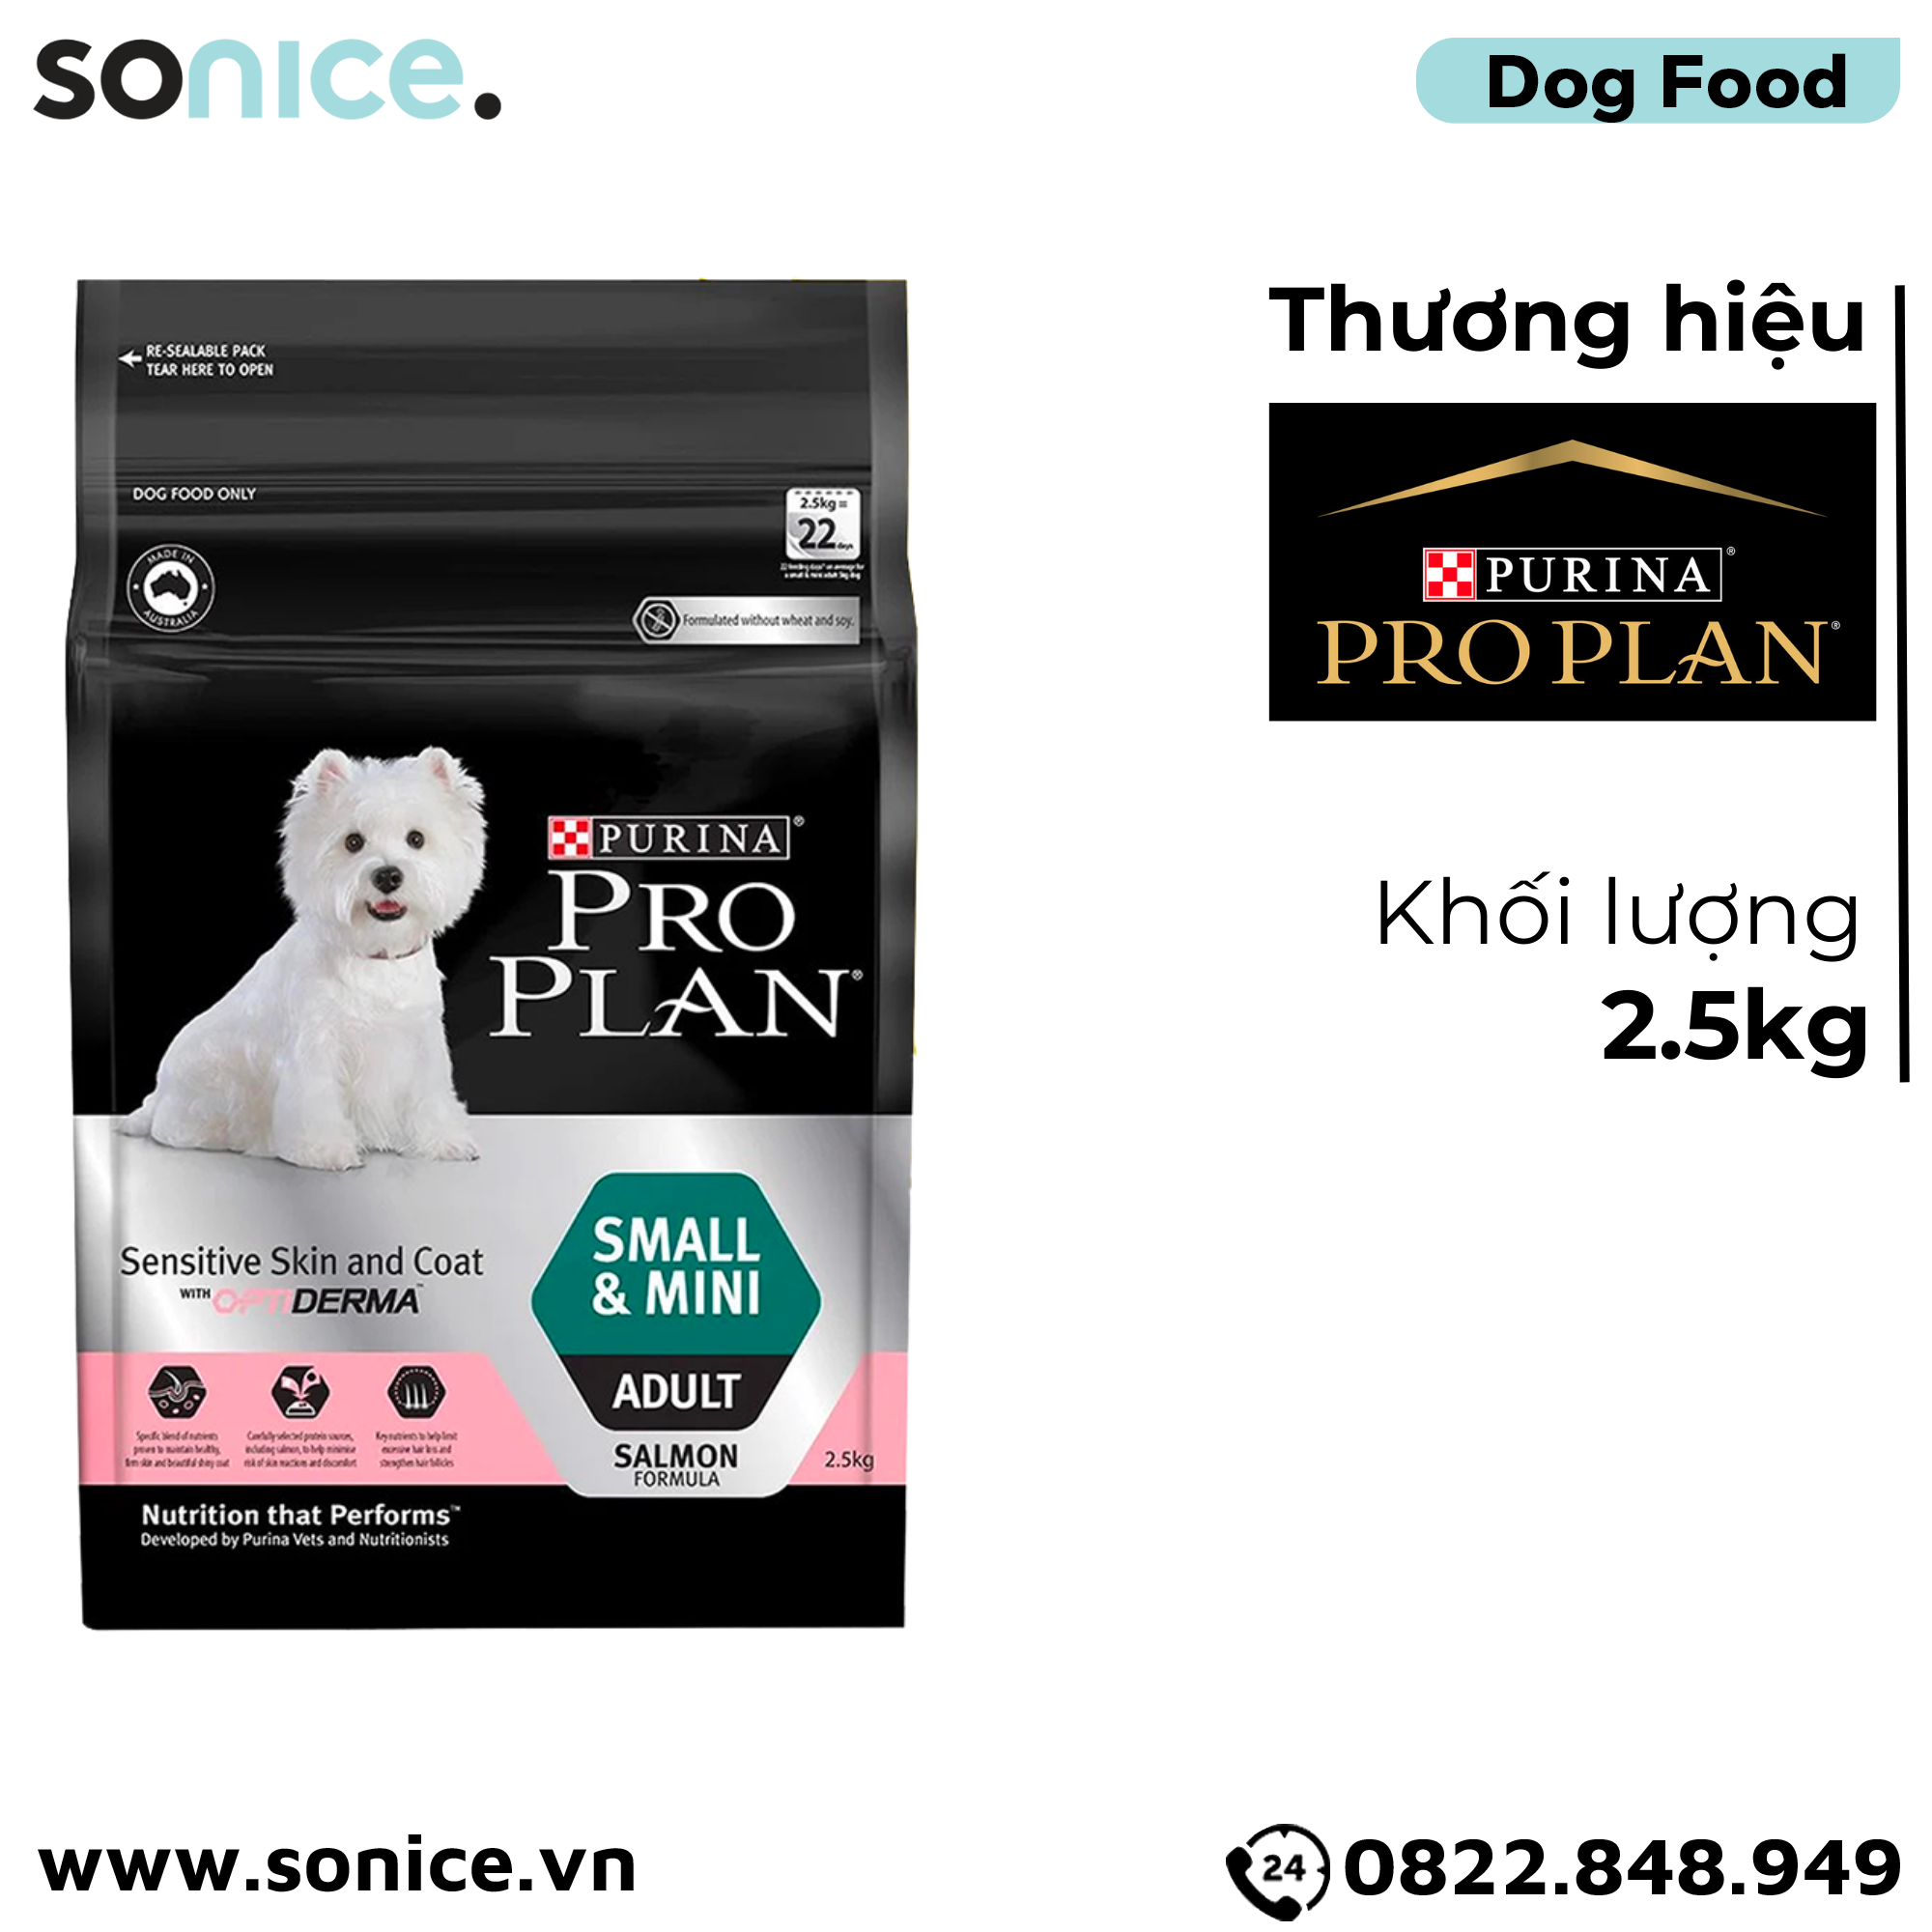  Thức ăn chó Purina PRO PLAN Small Mini Adult Sensitive Skin Coat 2.5kg - Dành cho da nhạy cảm dễ dị ứng giống chó nhỏ SONICE. 